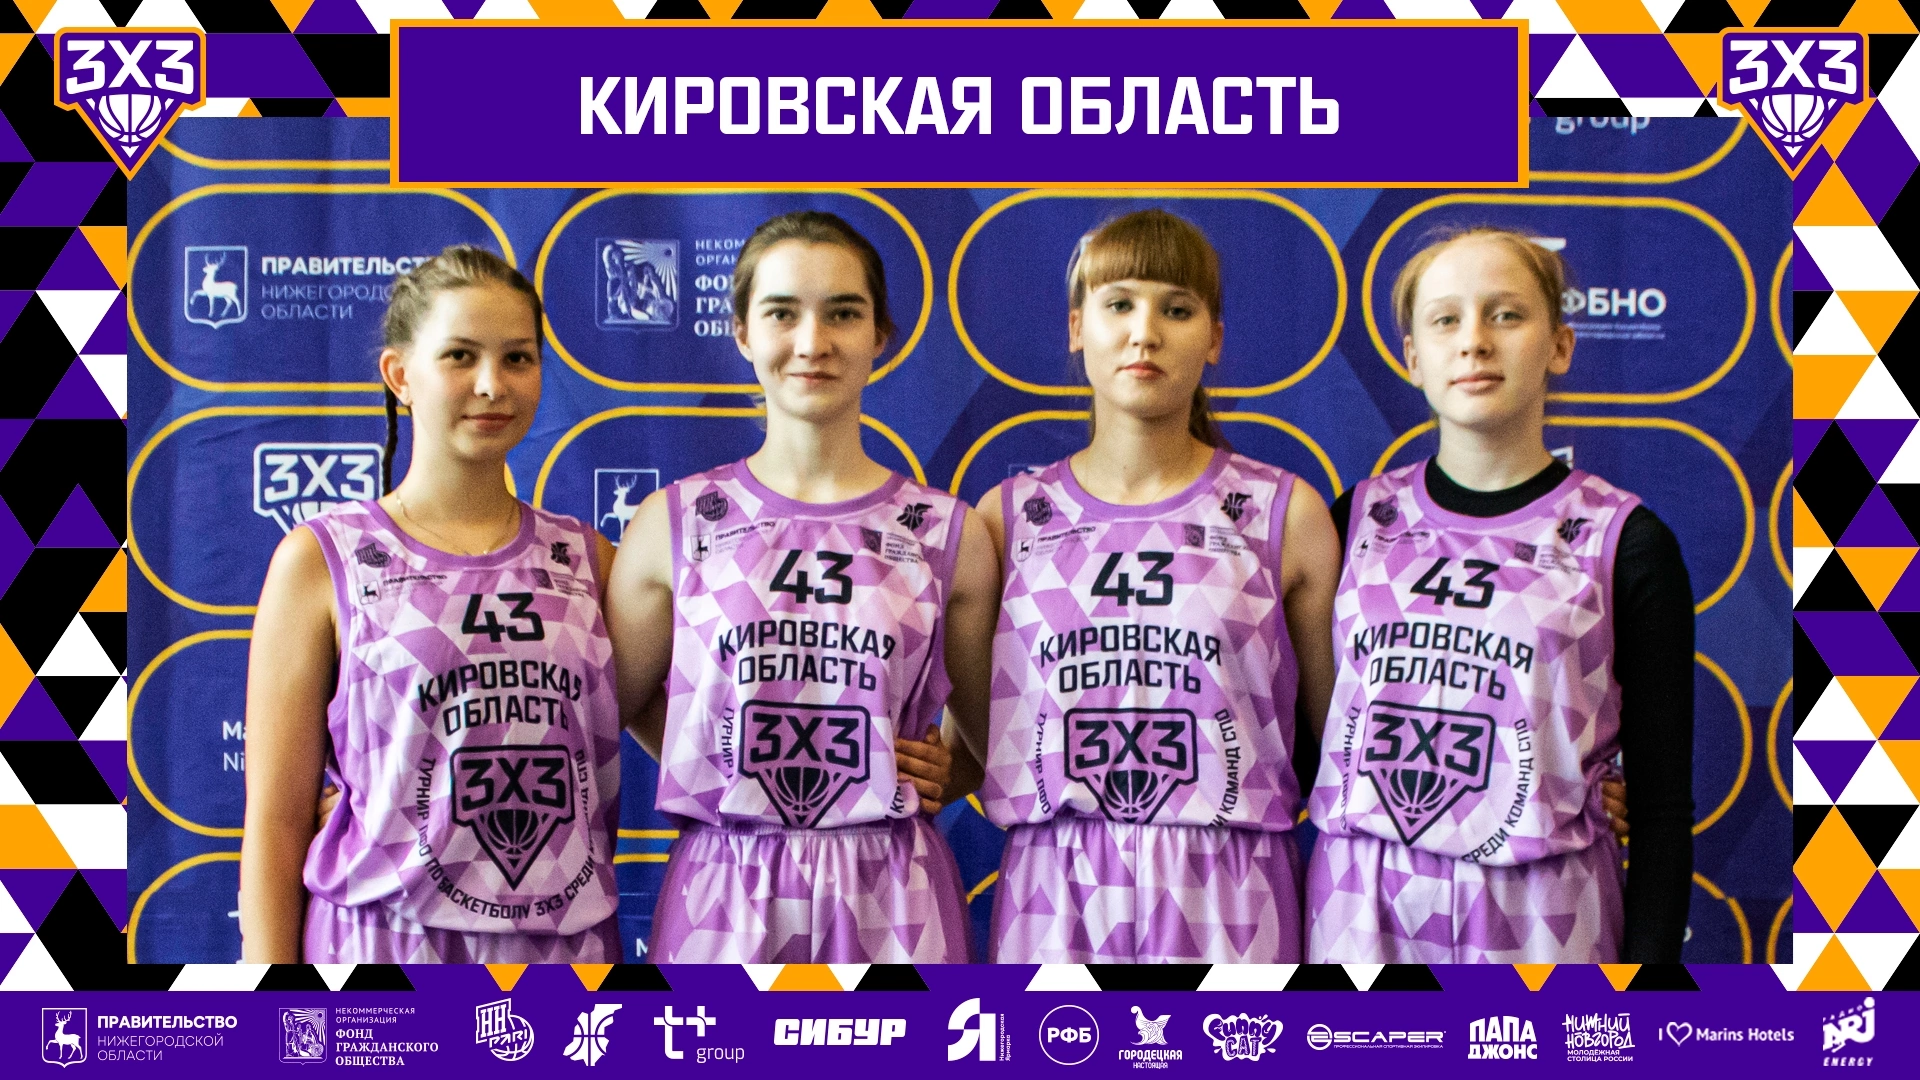 Завершился Суперфинал I Турнира по баскетболу 3х3 среди учащихся СПО в Нижнем Новгороде.